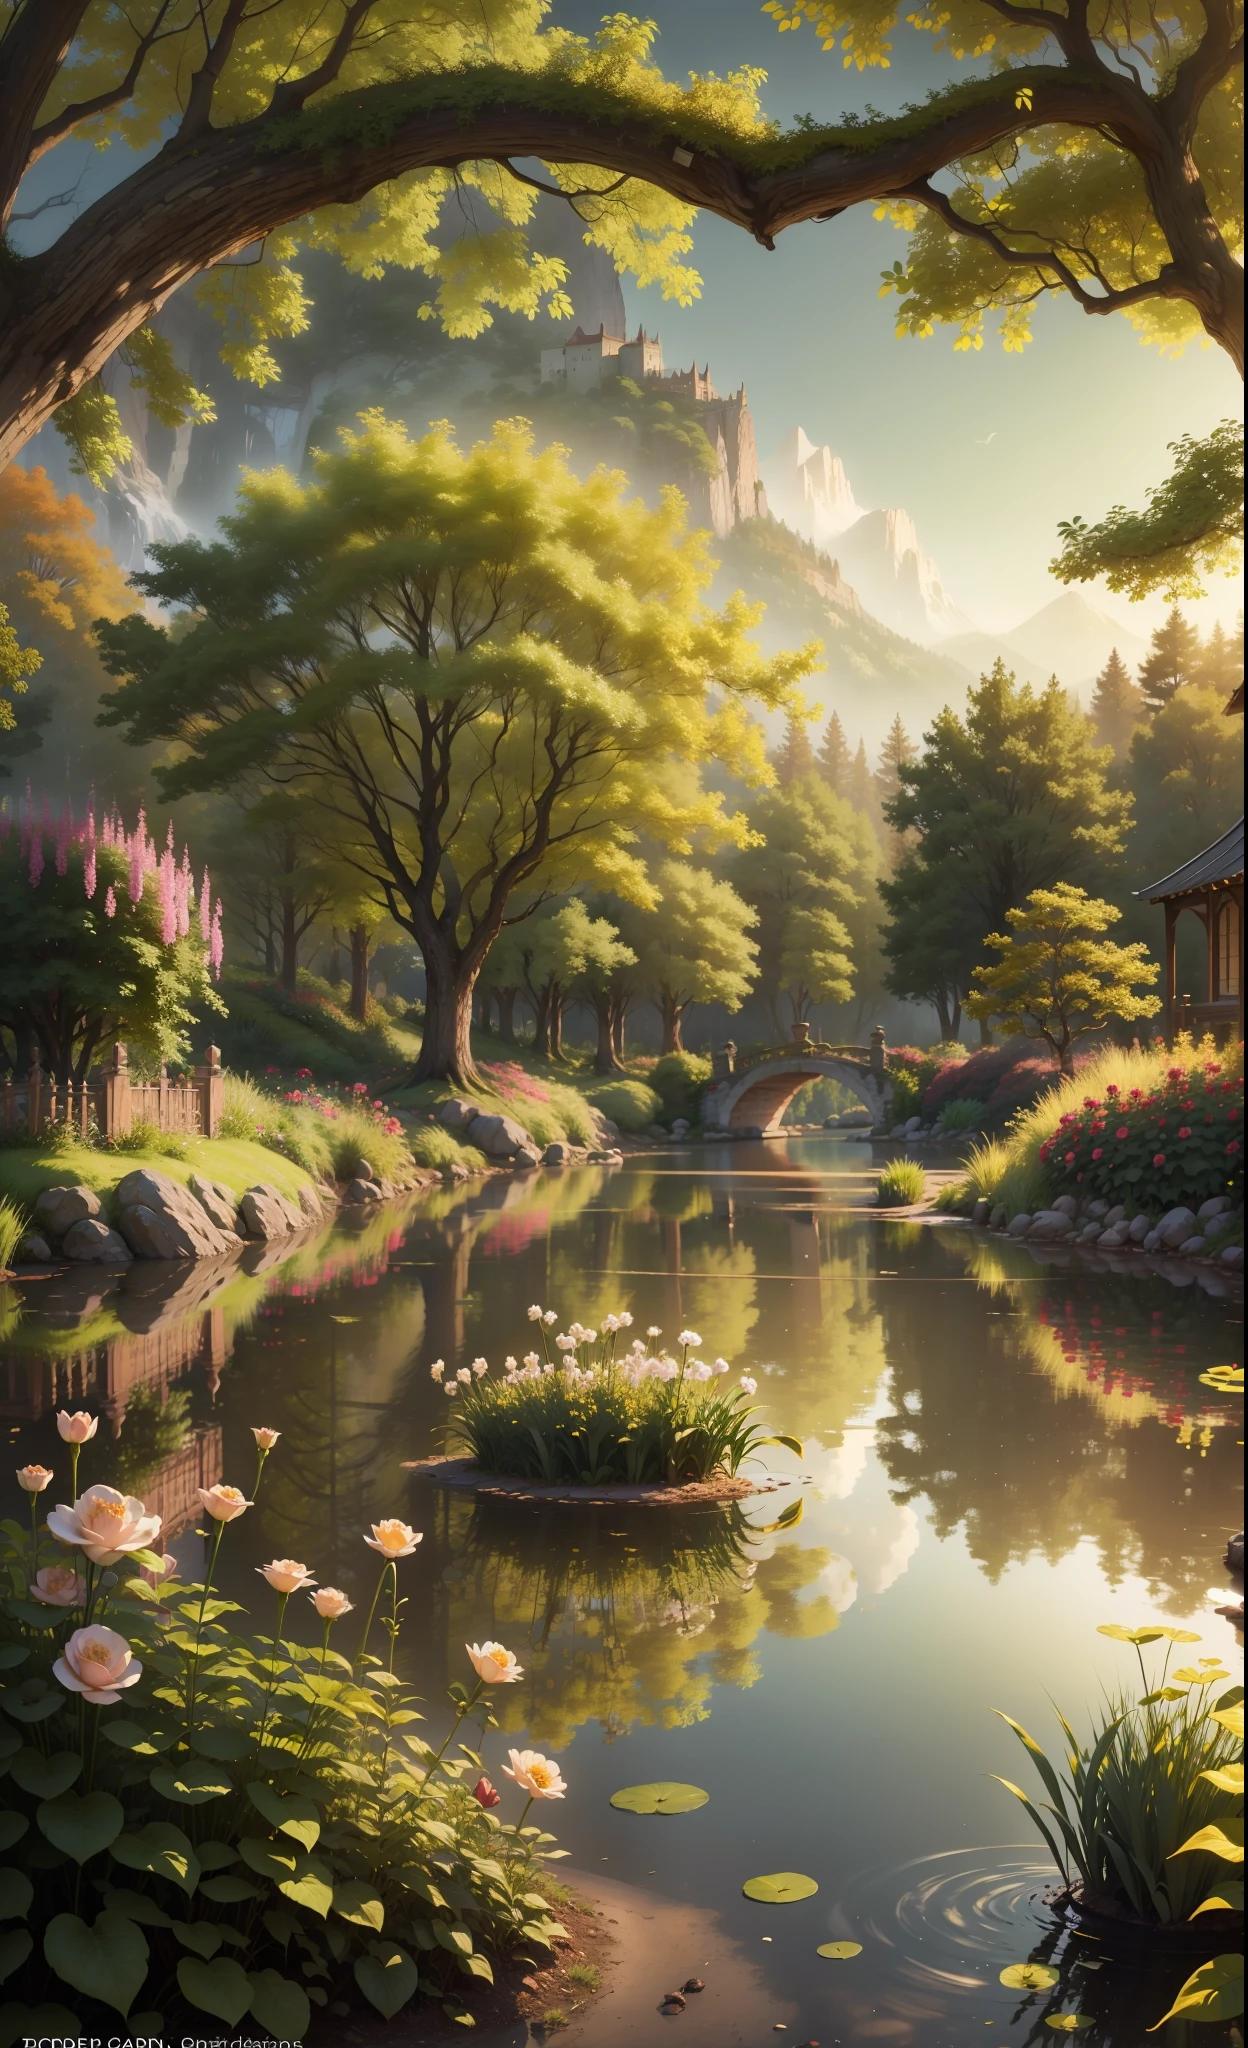 El jardín del Edén en el cielo, Precioso paisaje, mágico, etéreo, dorado, árboles, lago, arbustos, flores